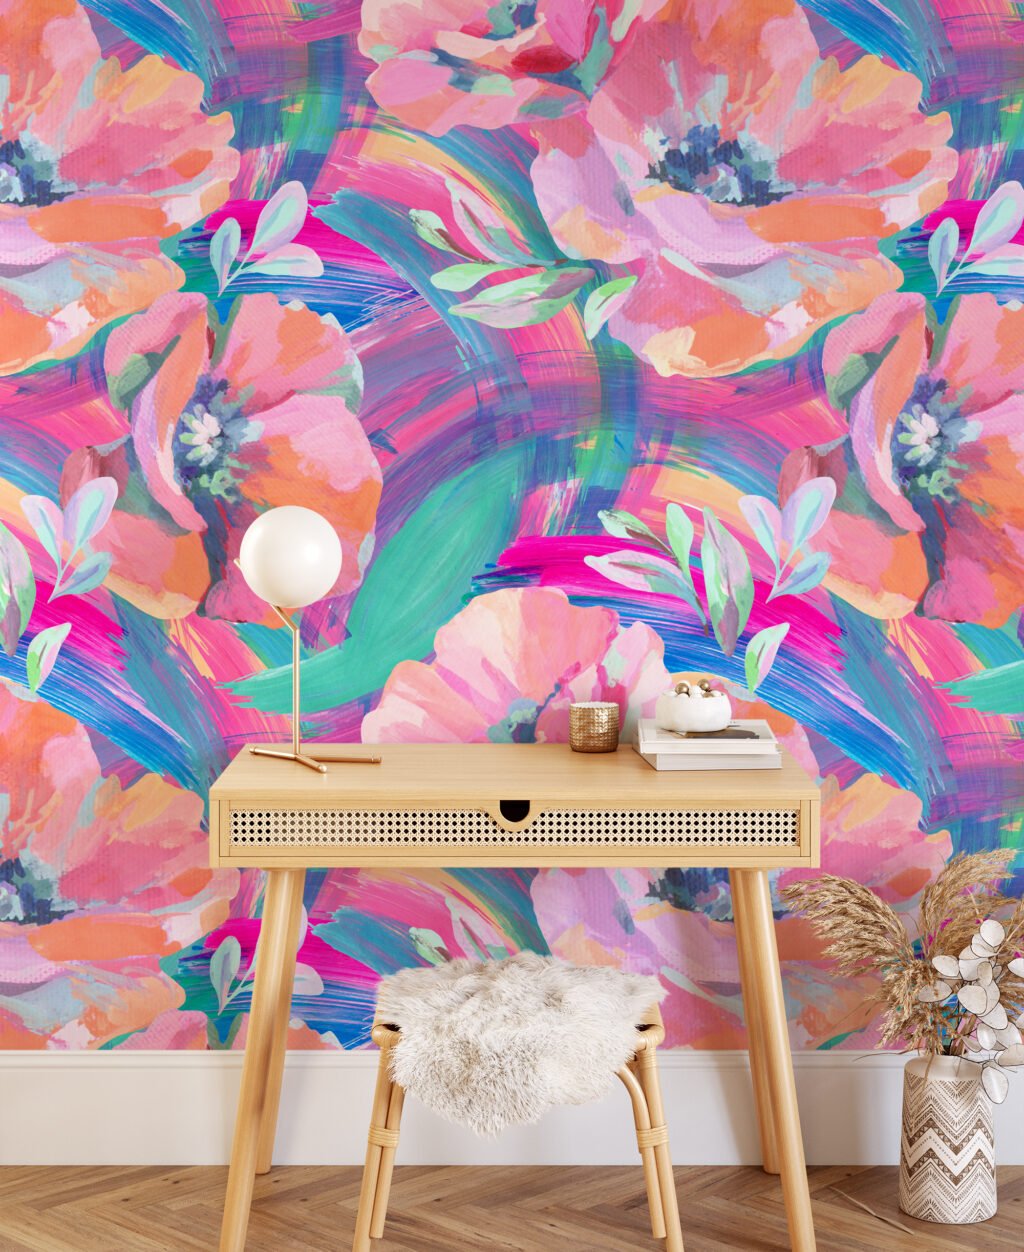 Büyük Soyut Çiçekli Boyanmış Efekt Duvar Kağıdı, Canlı Sulu Boya Çiçekleri Duvar Posteri Çiçekli Duvar Kağıtları 3